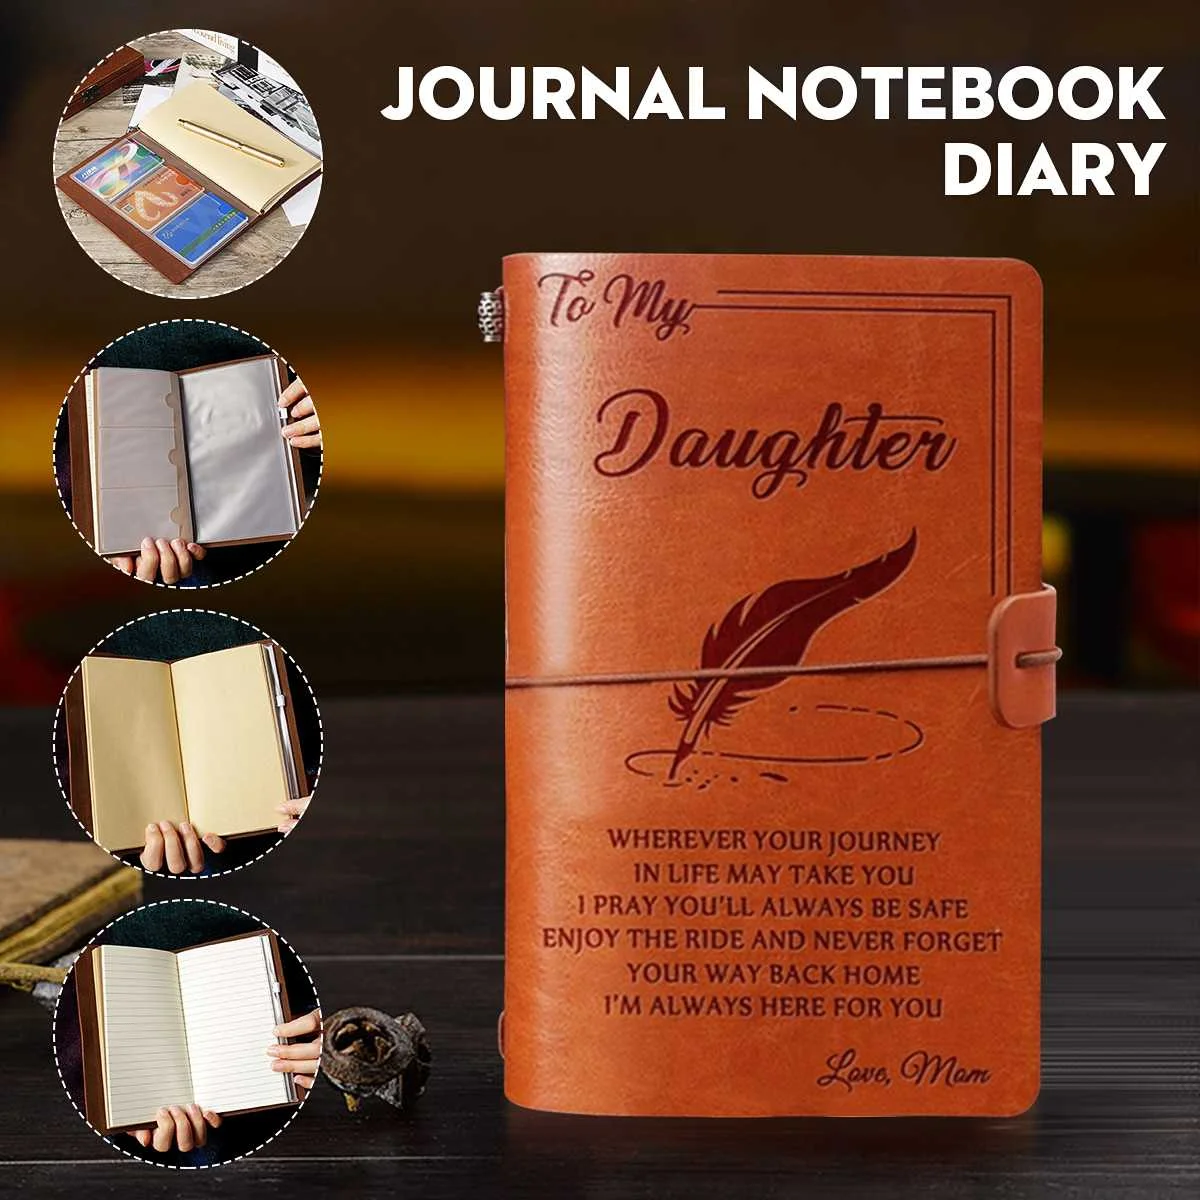 20x12 см с гравировкой кожаный дневник для моей дочери лицо проблемы любовь Мон записная книжка с гравировкой дневник